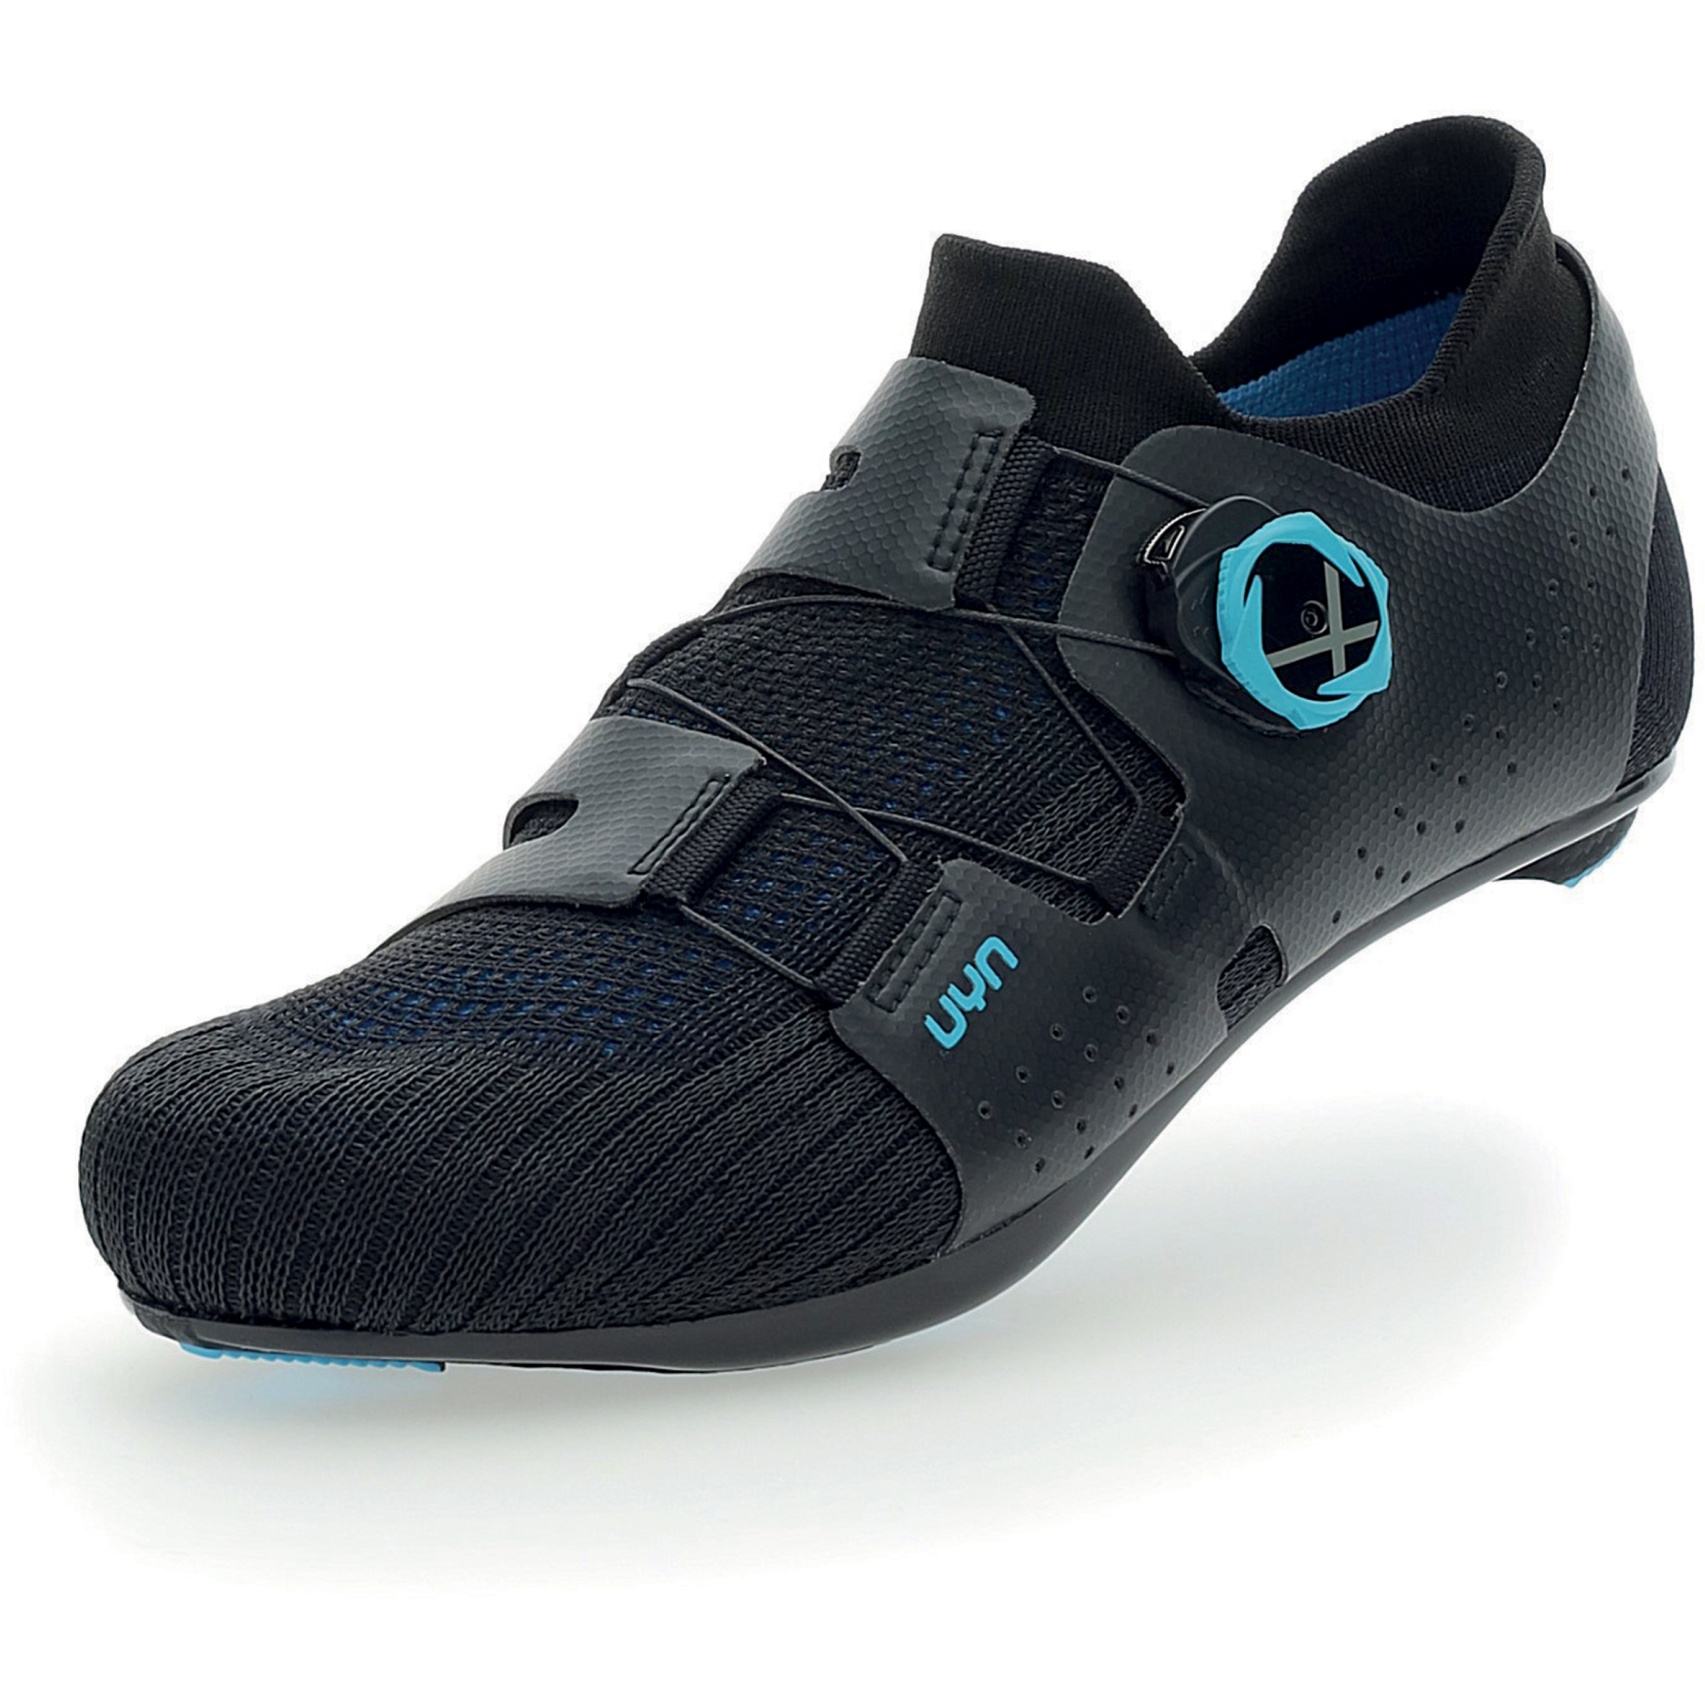 Produktbild von UYN Naked Full-Carbon Rennradschuhe - Schwarz/Blau